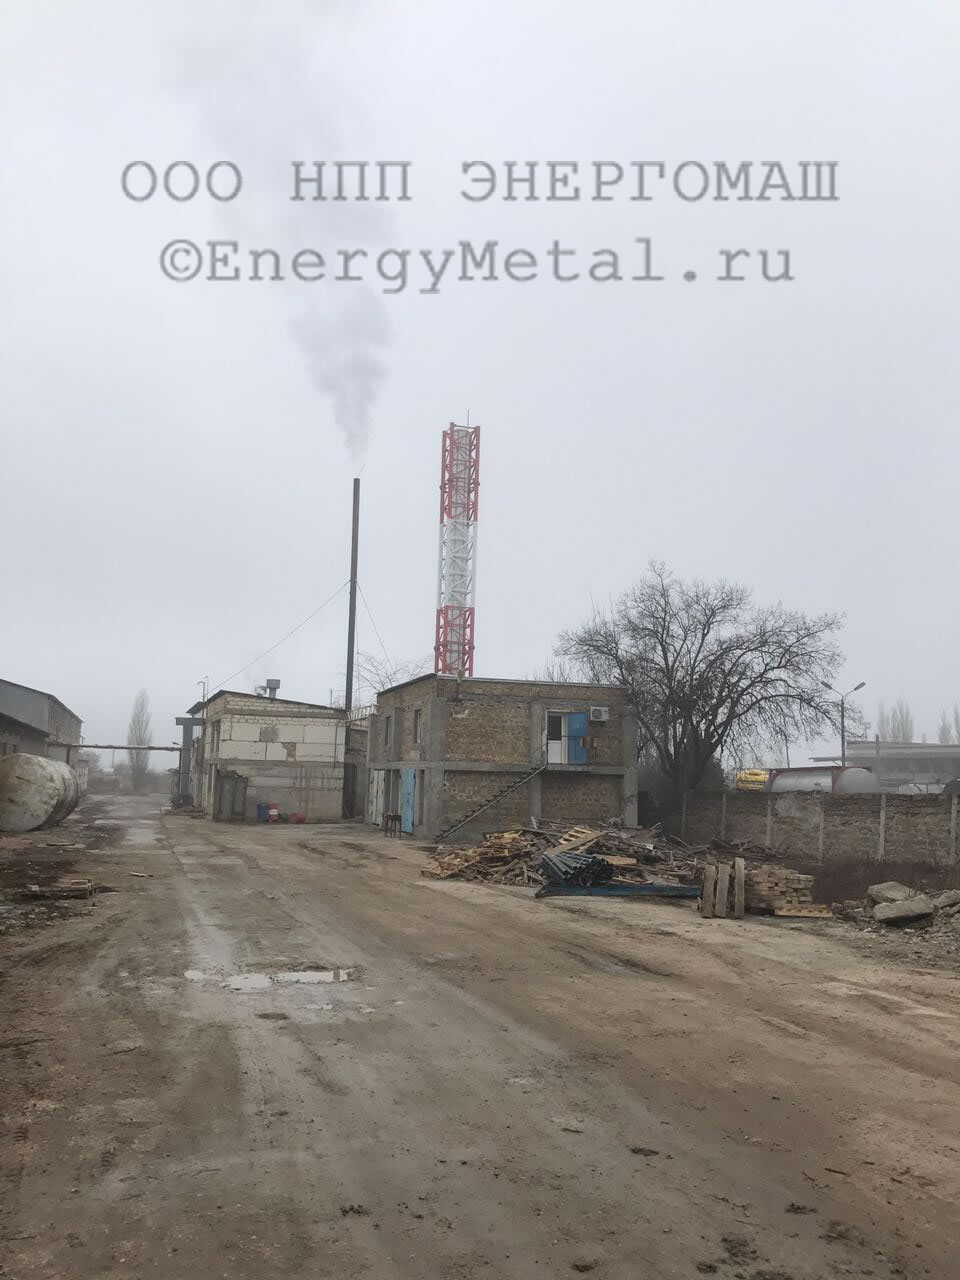 Дымовая труба г. Симферополь Республика Крым РФ